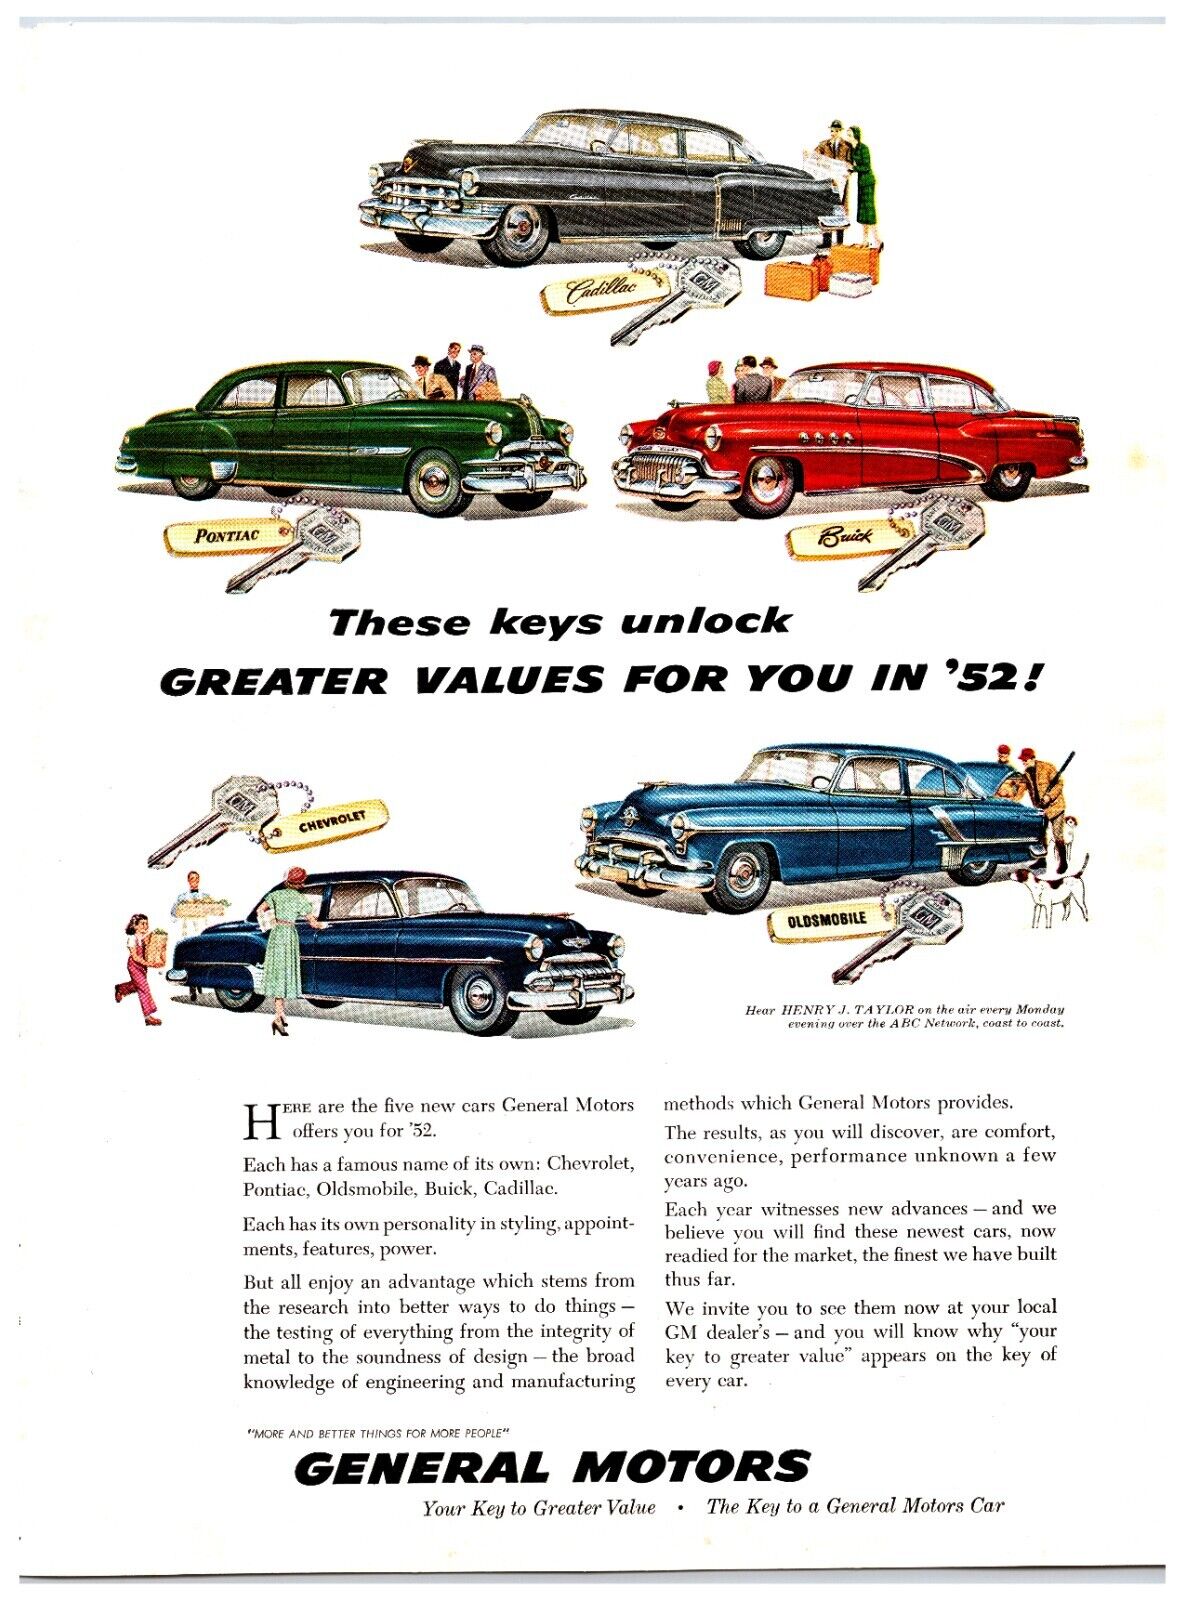 1952 General Motors Cars - Original Print Advertisement (8in x 11in)